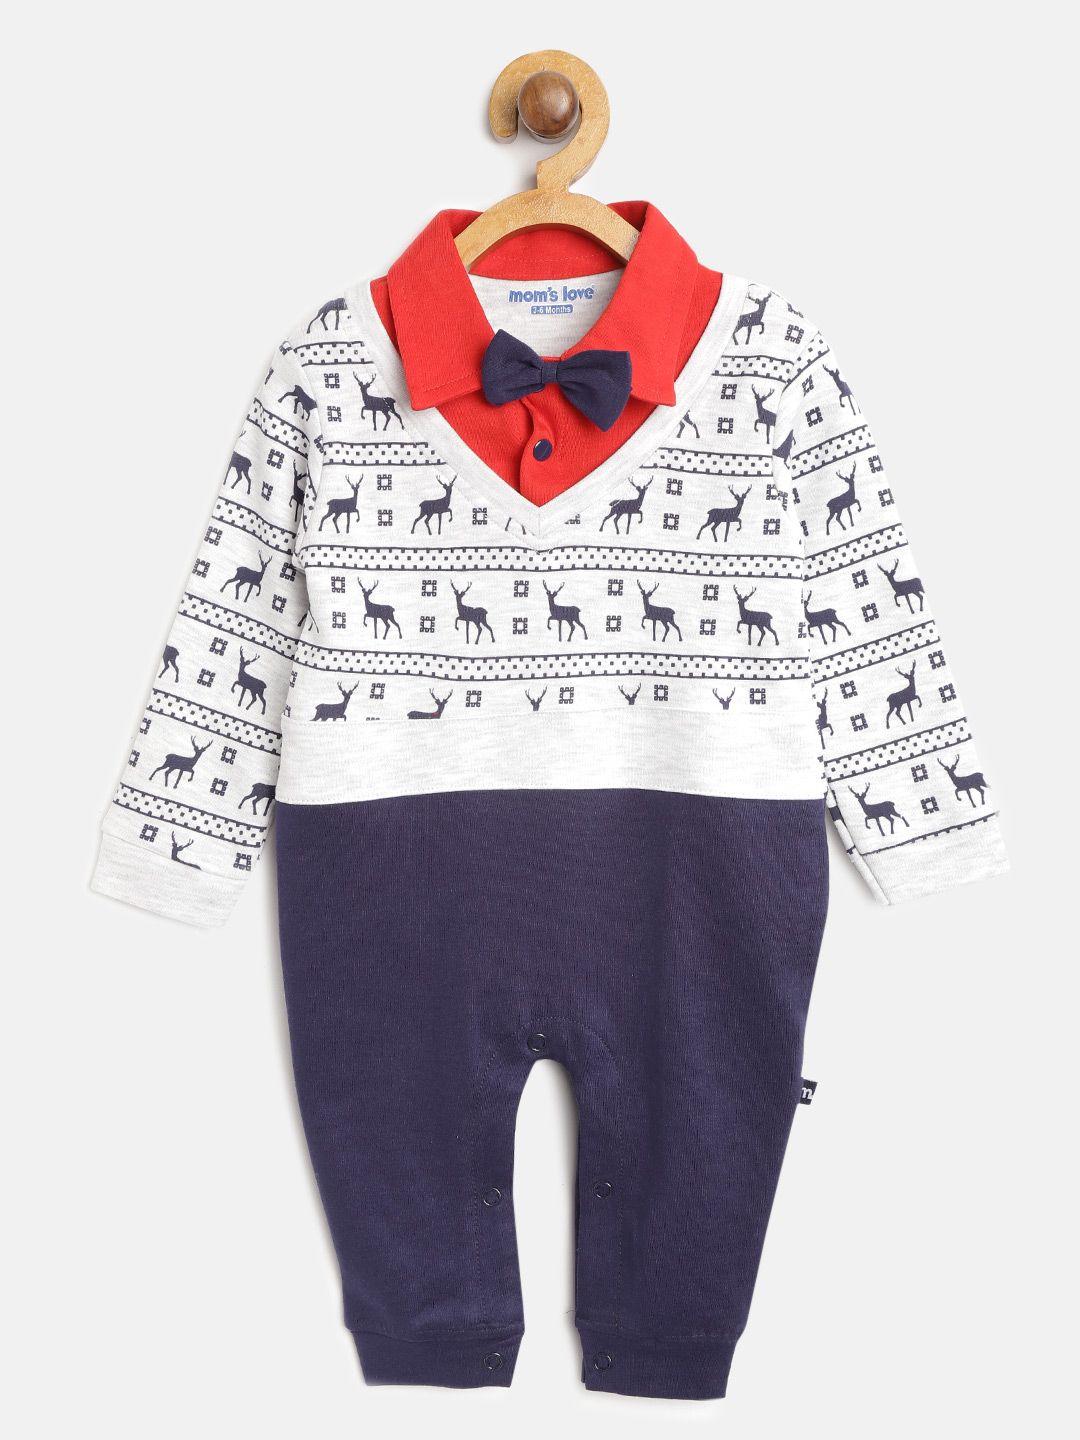 moms love boys grey melange & navy blue reindeer print rompers with bow tie detail